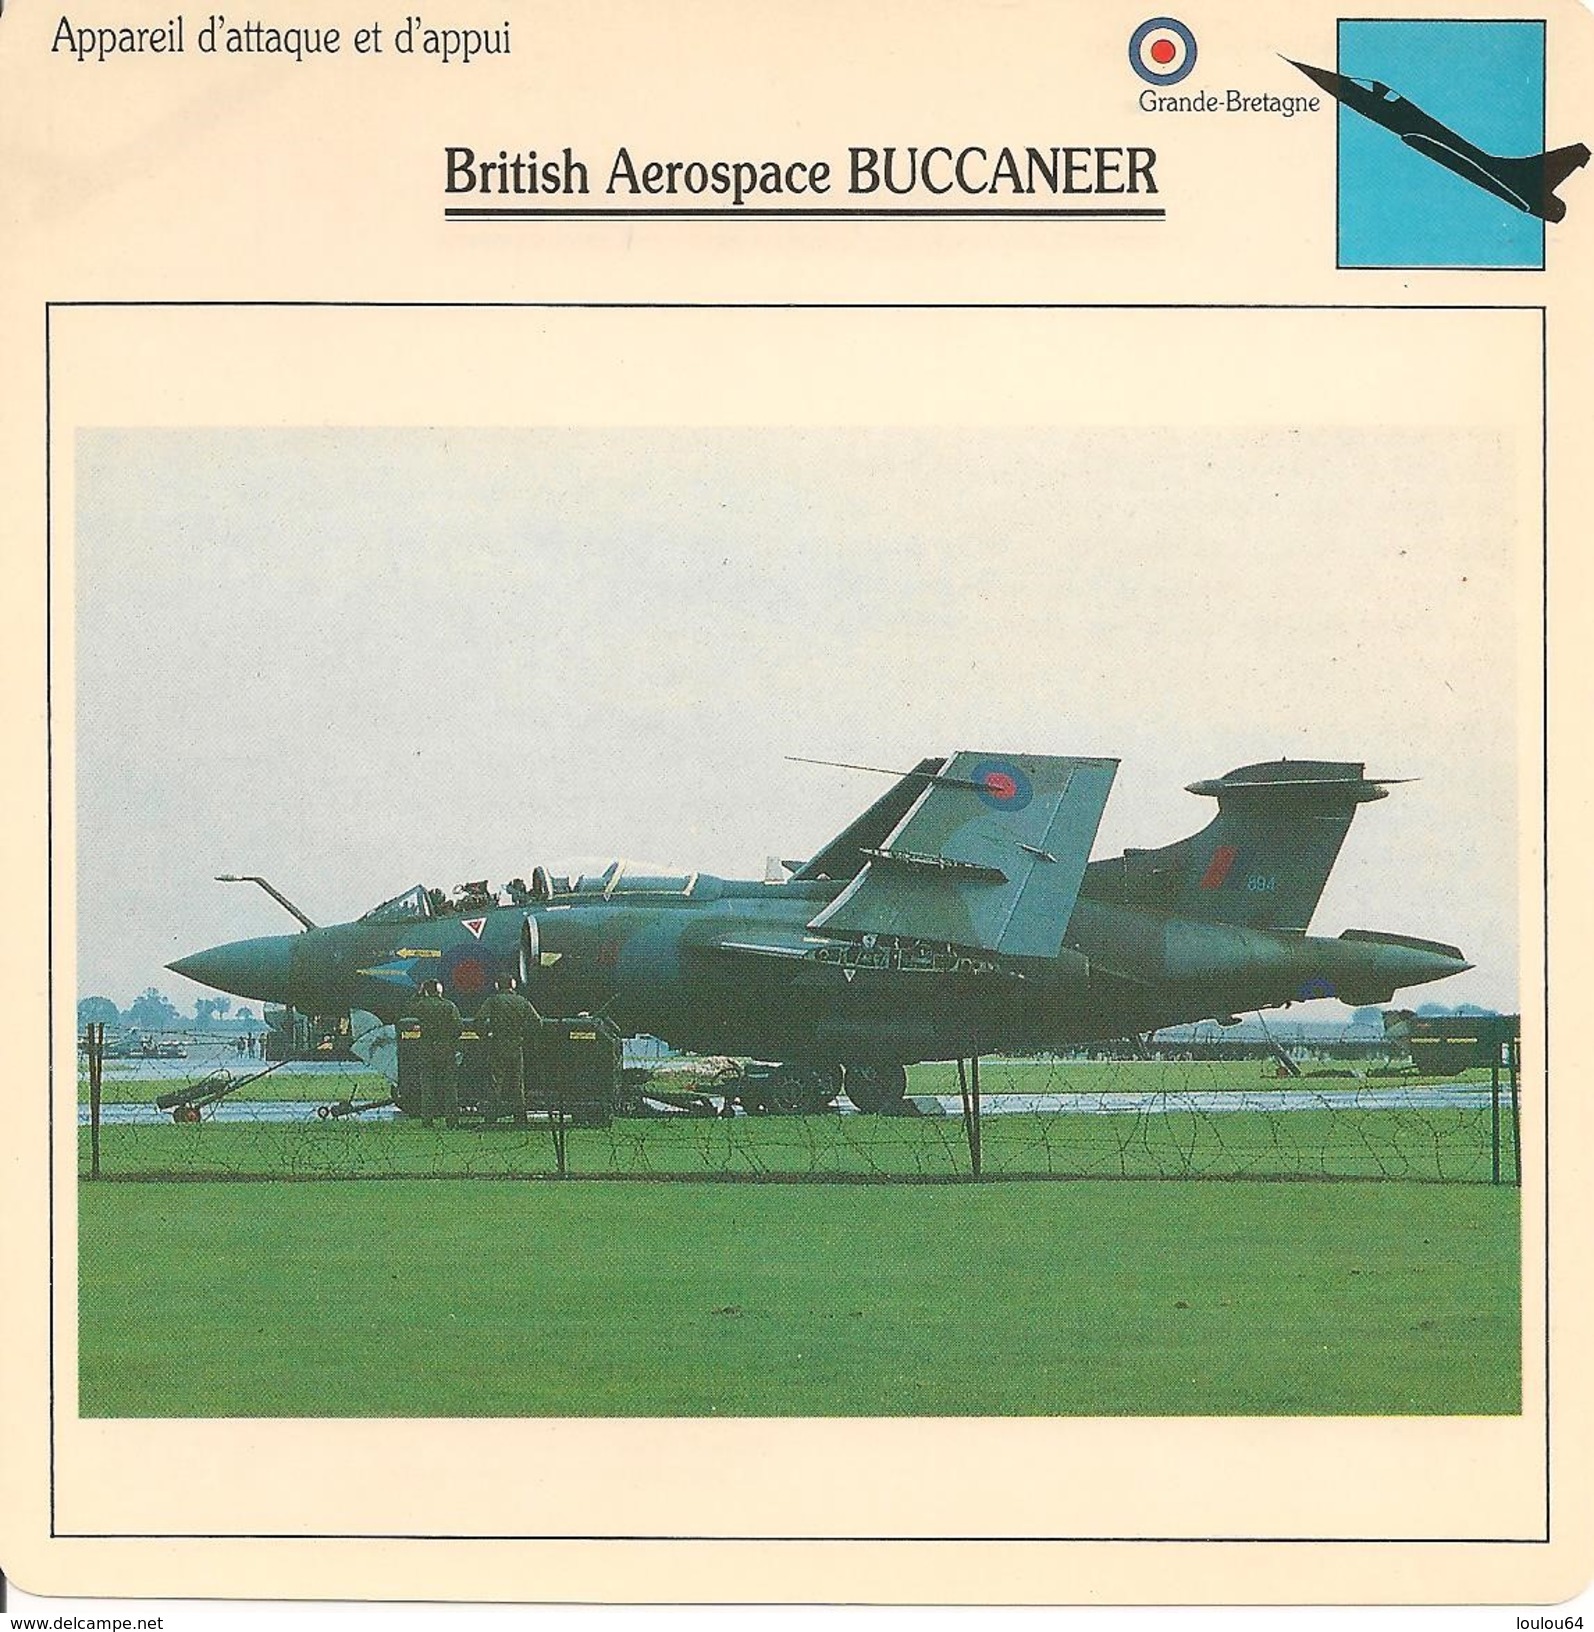 Fiches Illustrées - Caractéristiques Avions - Appareil D'attaque - British Aerospace BUCCANEER - Grande Bretagne - (39) - Luchtvaart